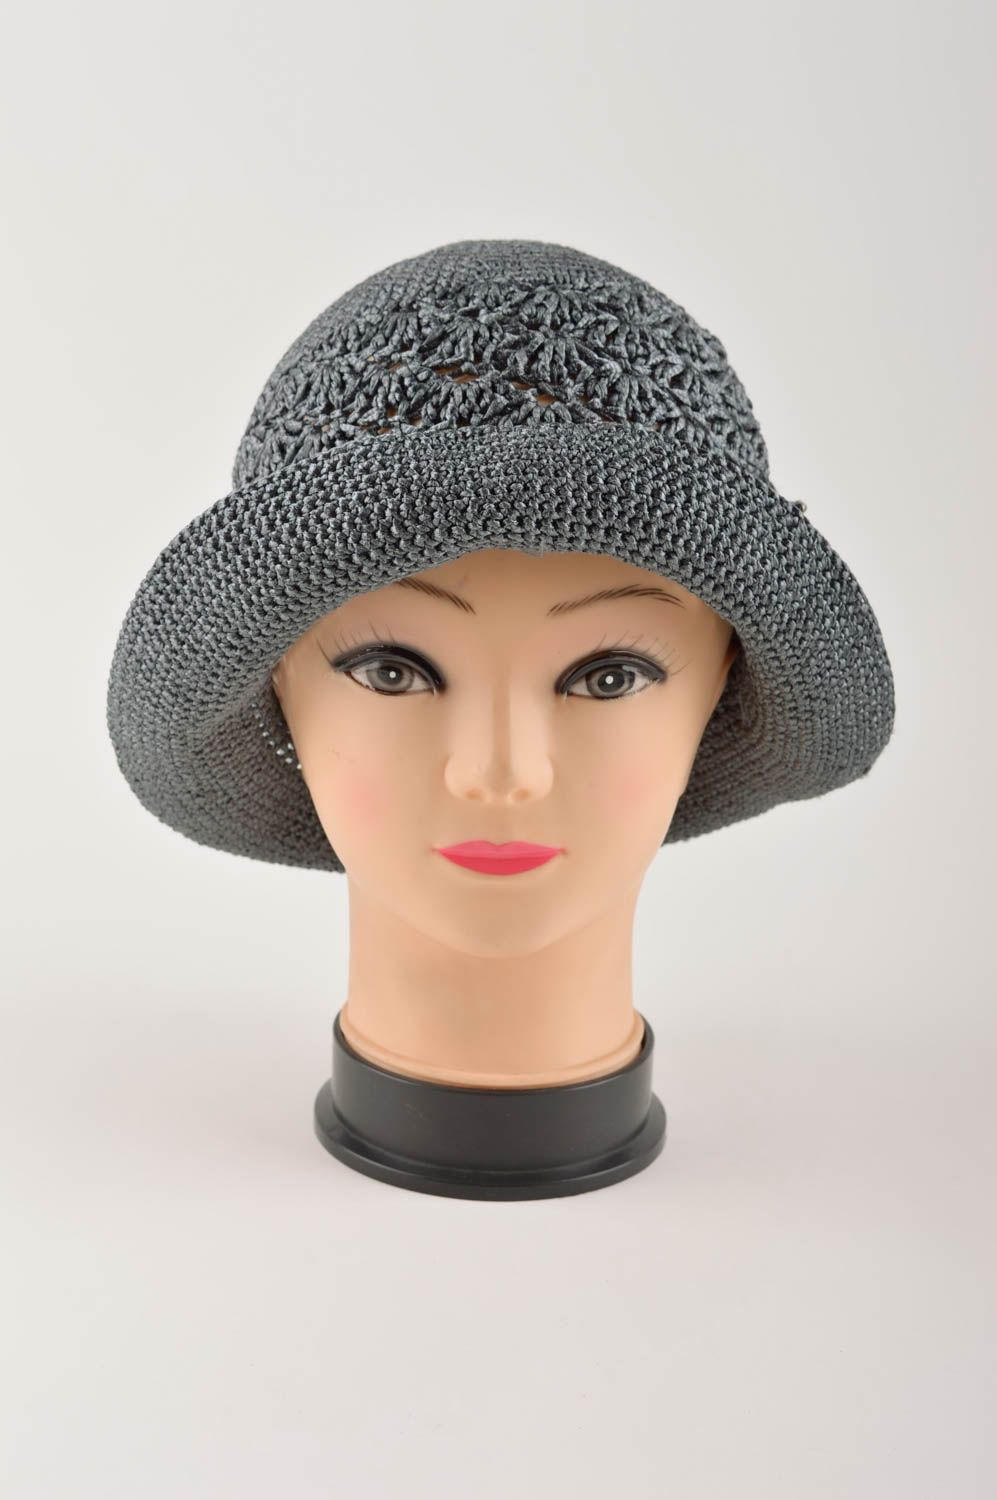 Шляпа на пляж женская шляпа ручной работы летний головной убор серого цвета фото 3